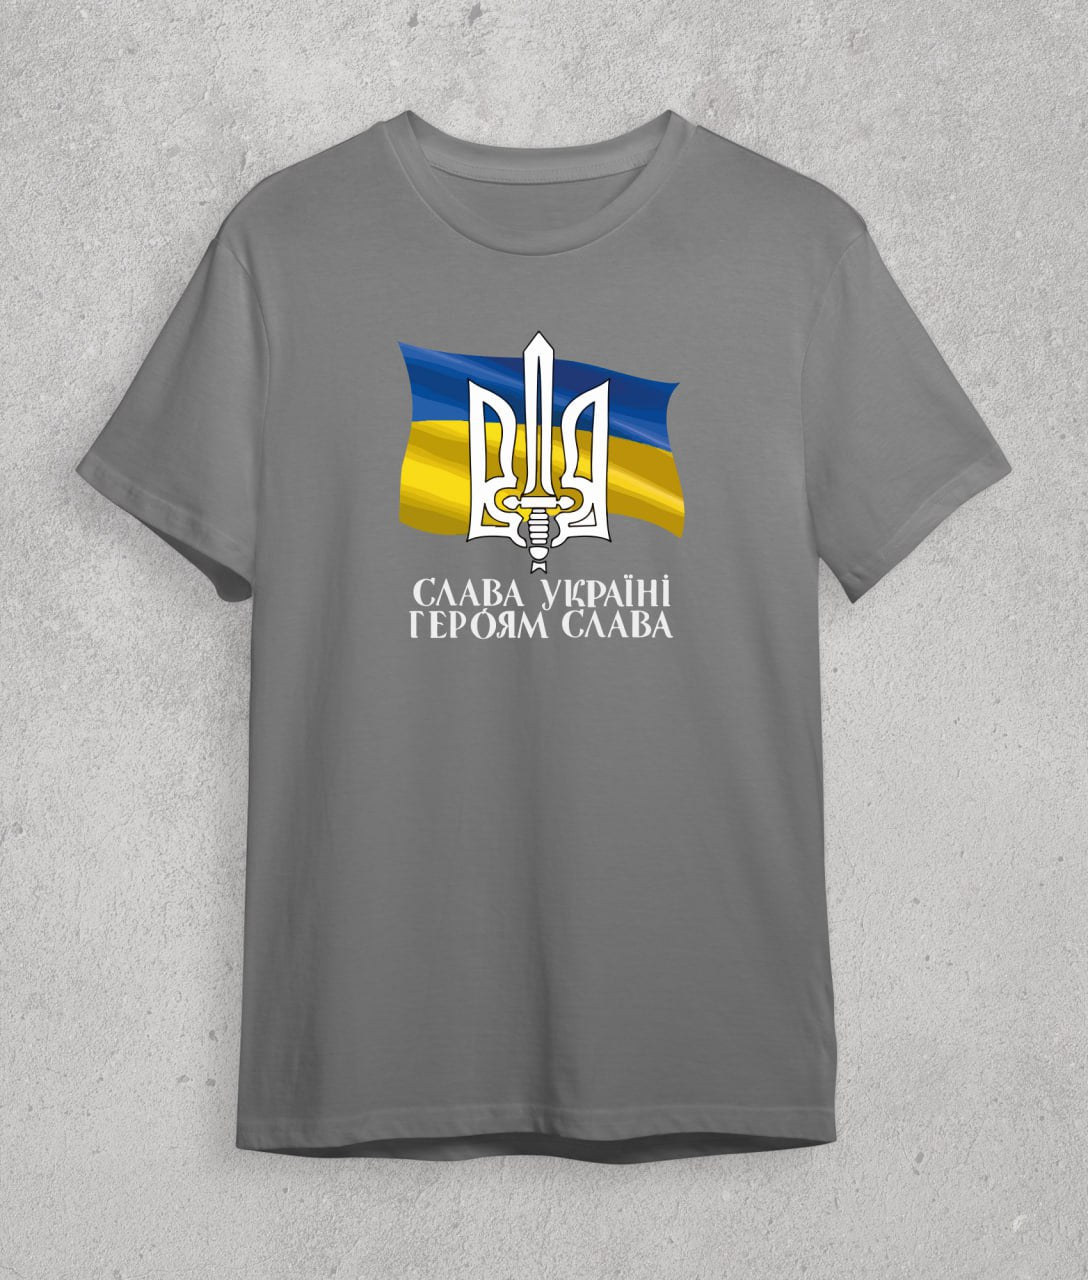 T-shirt Glory to Ukraine, Glory to Heroes